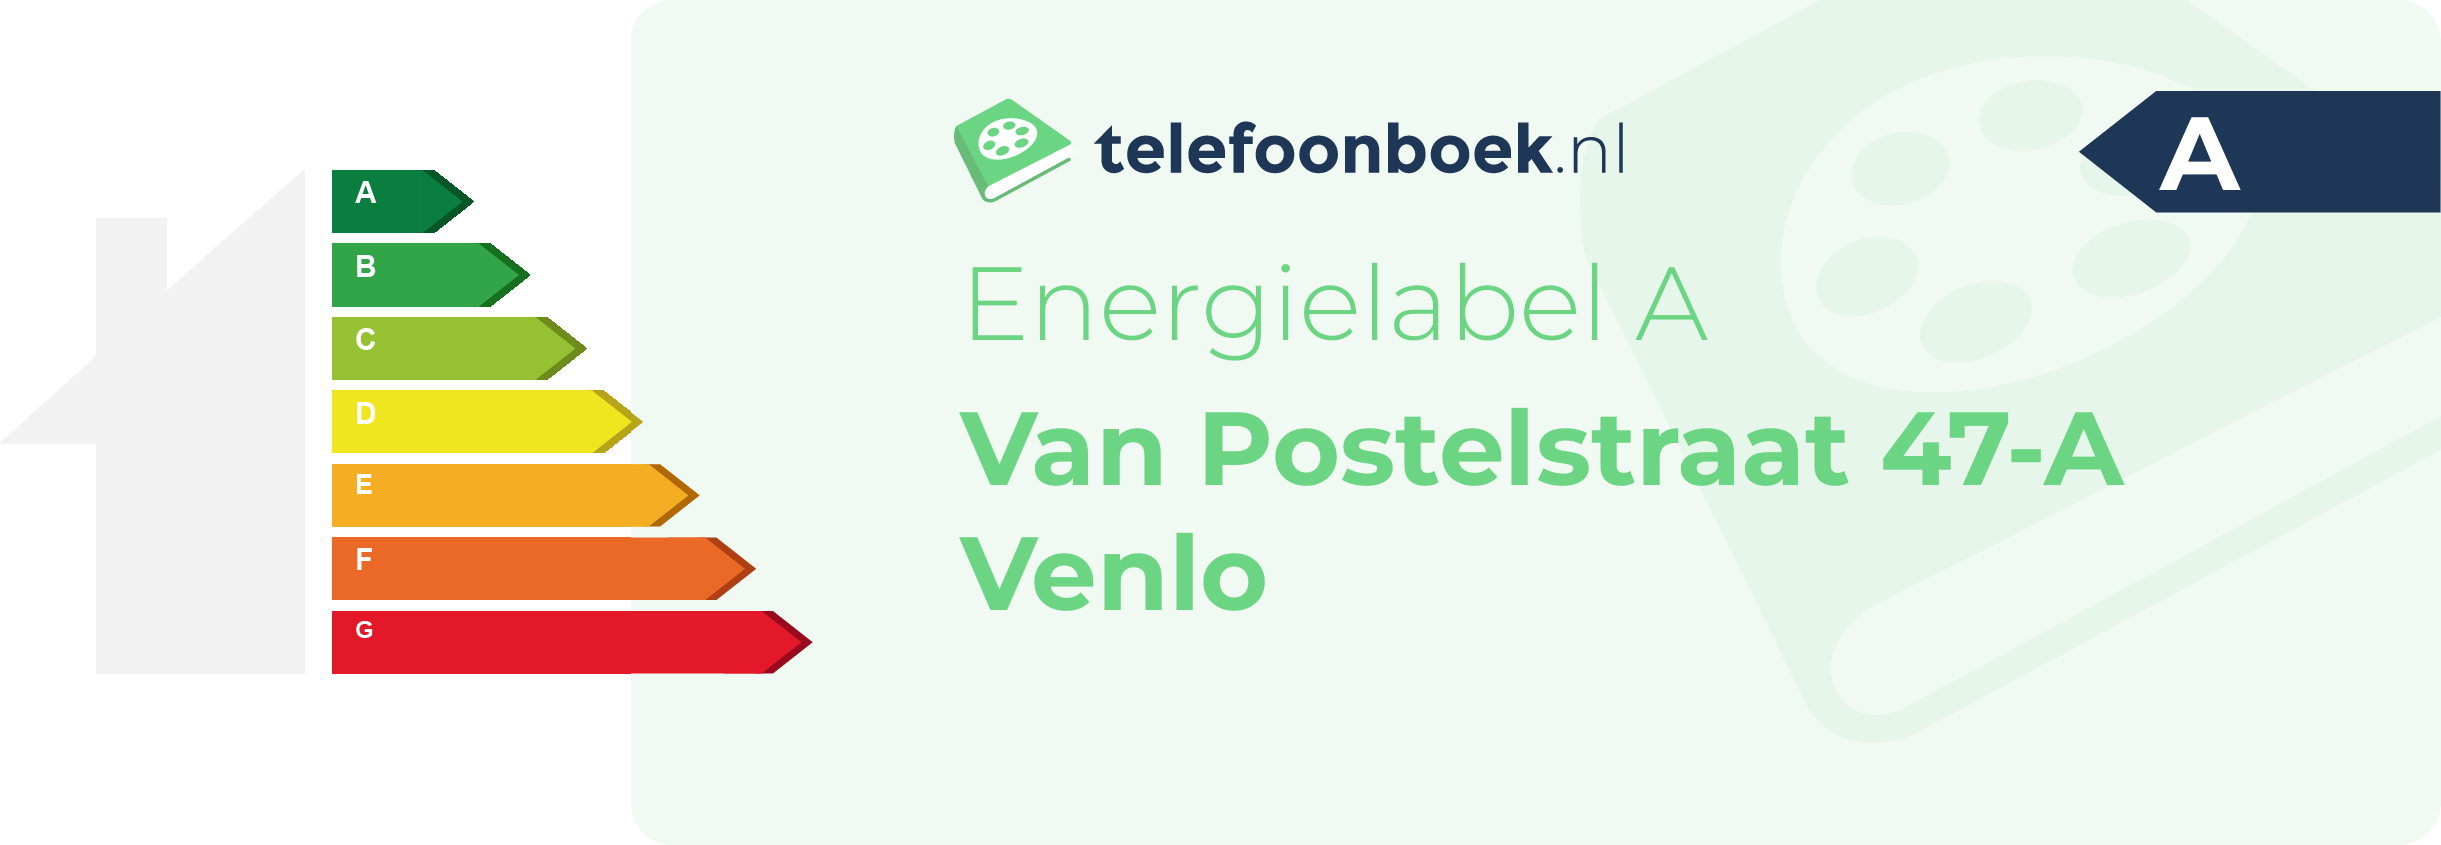 Energielabel Van Postelstraat 47-A Venlo